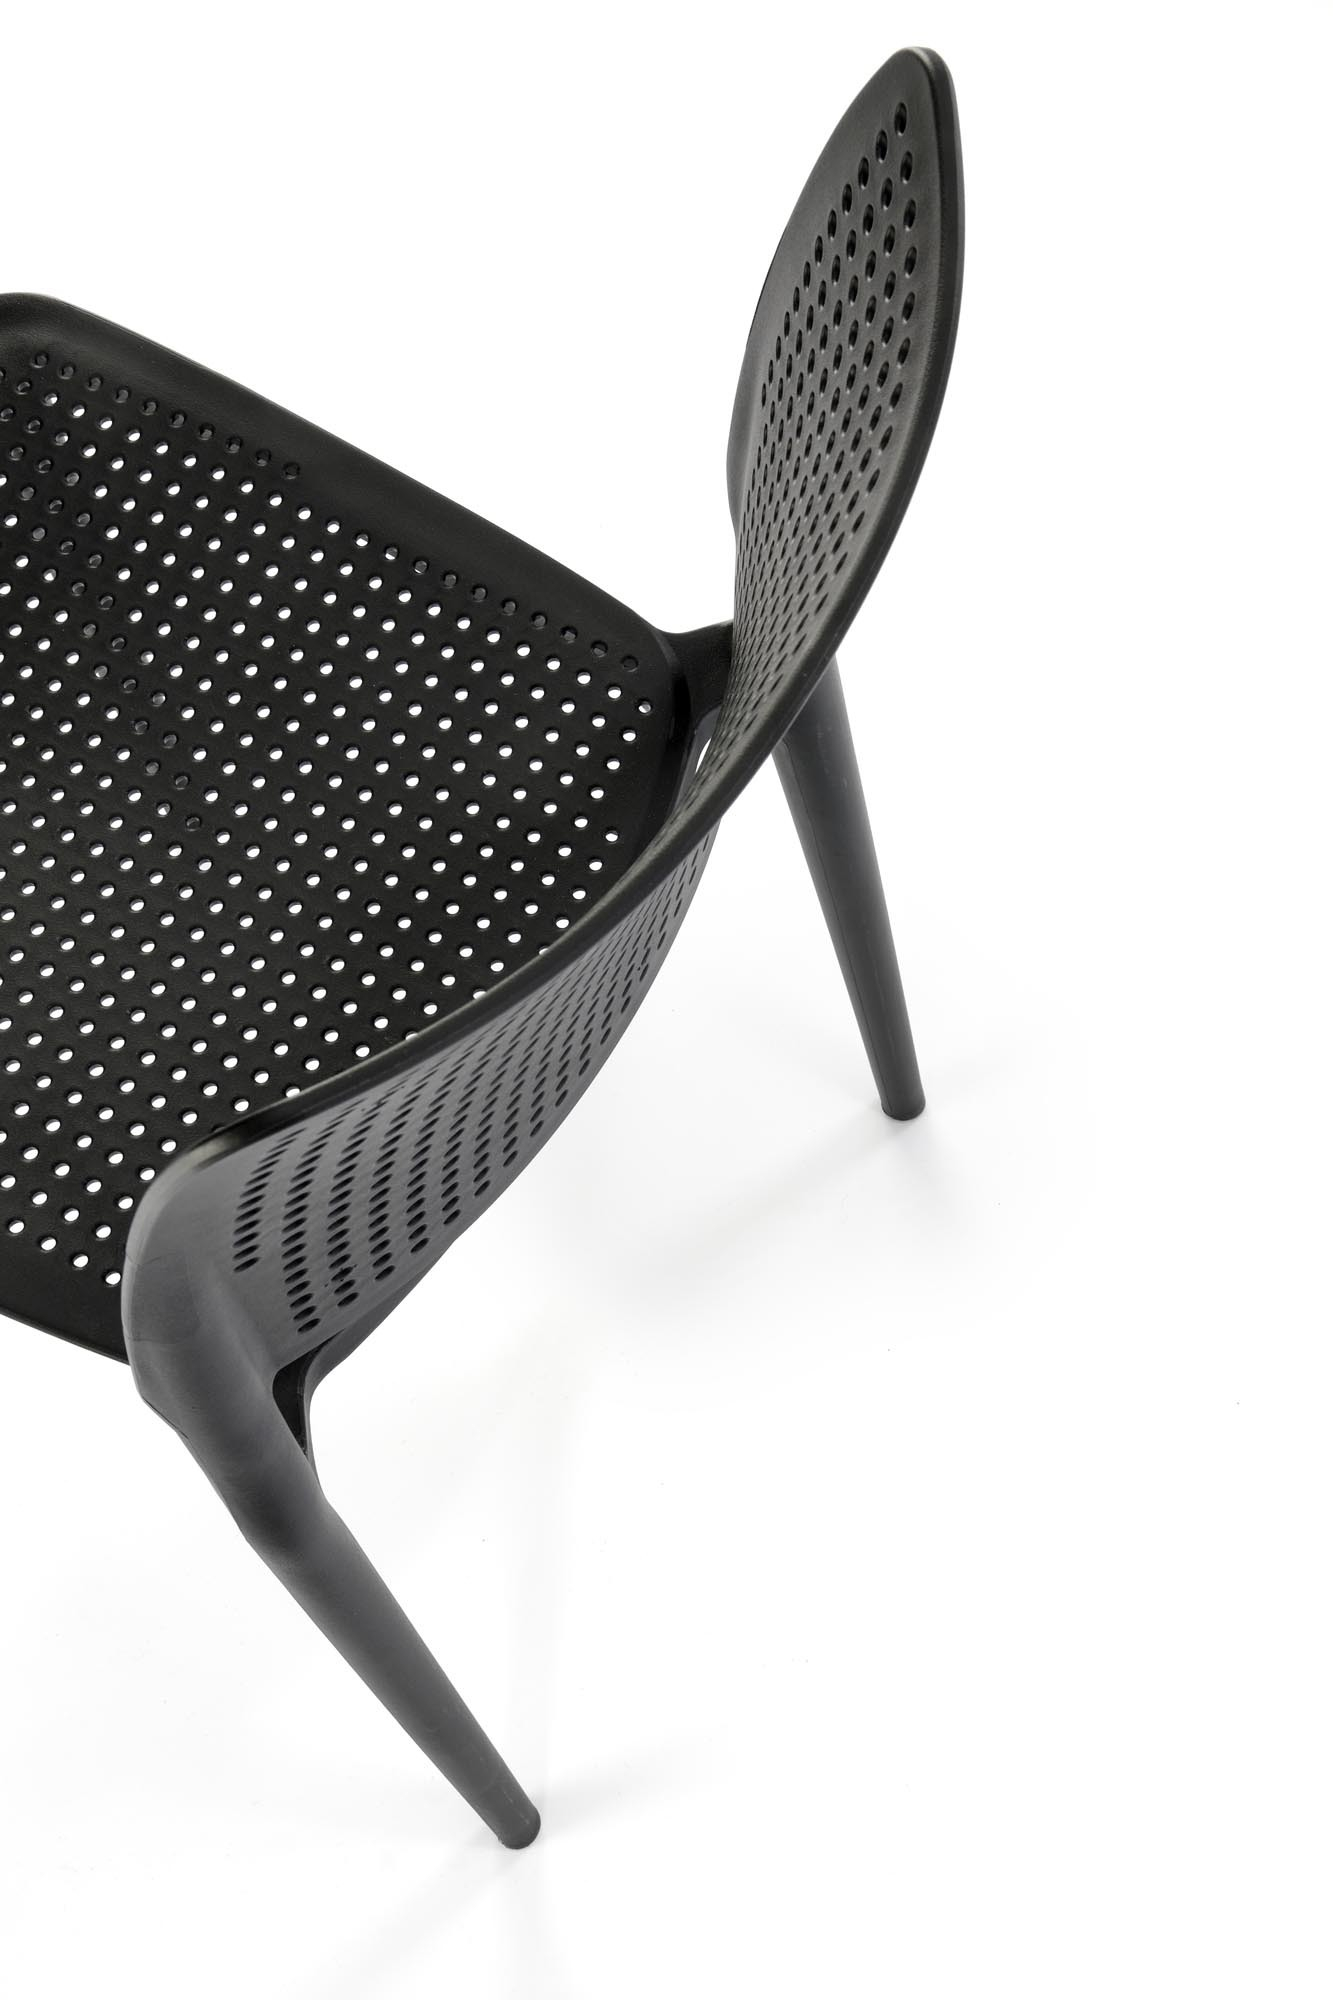 Krzesło z tworzywa K514 kolor czarny